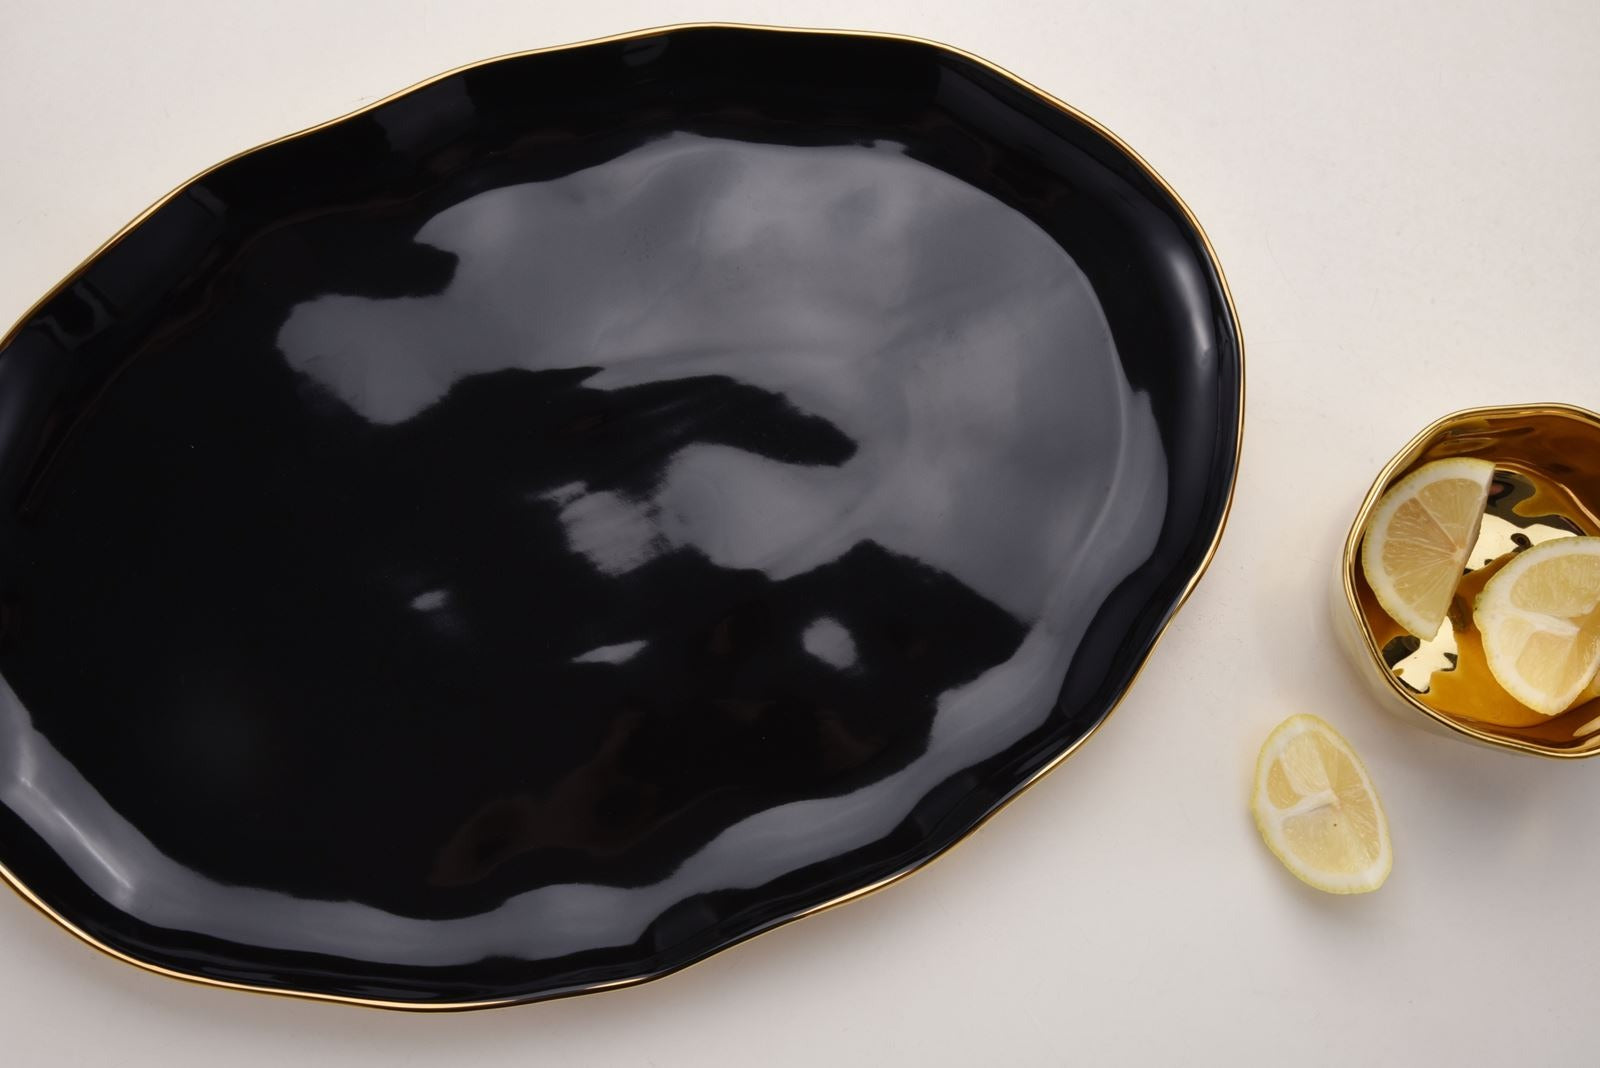 Black & Gold Oval Platter